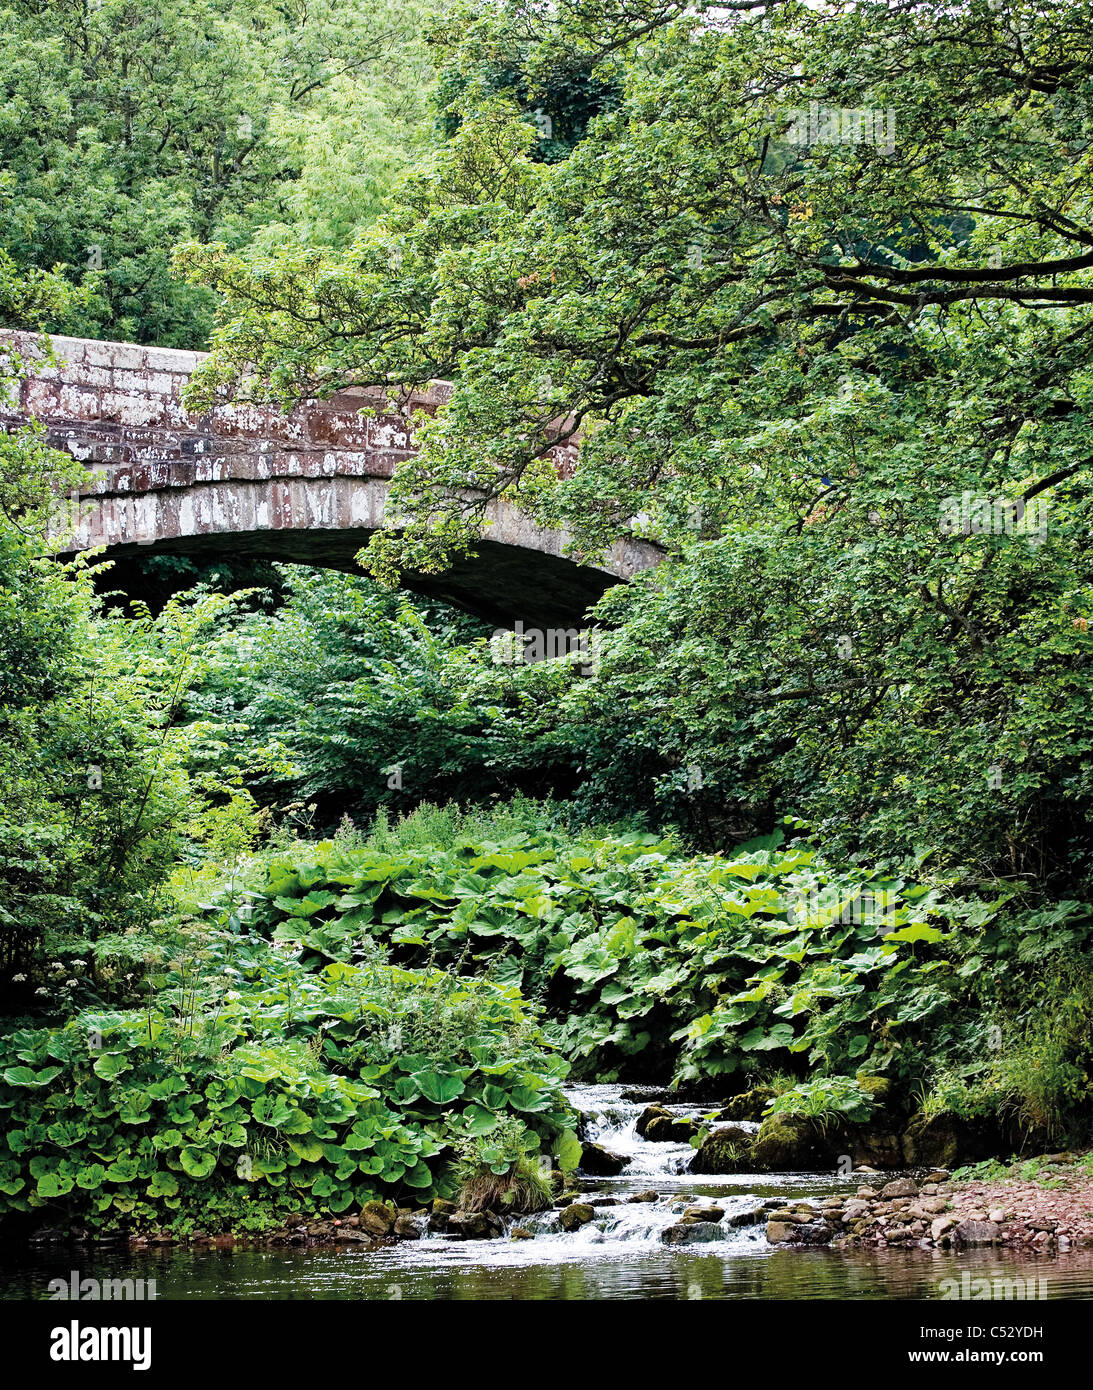 Brücke mit Bach, Bäume und Wasser Pflanzen in voller Blatt geboren Stockfoto